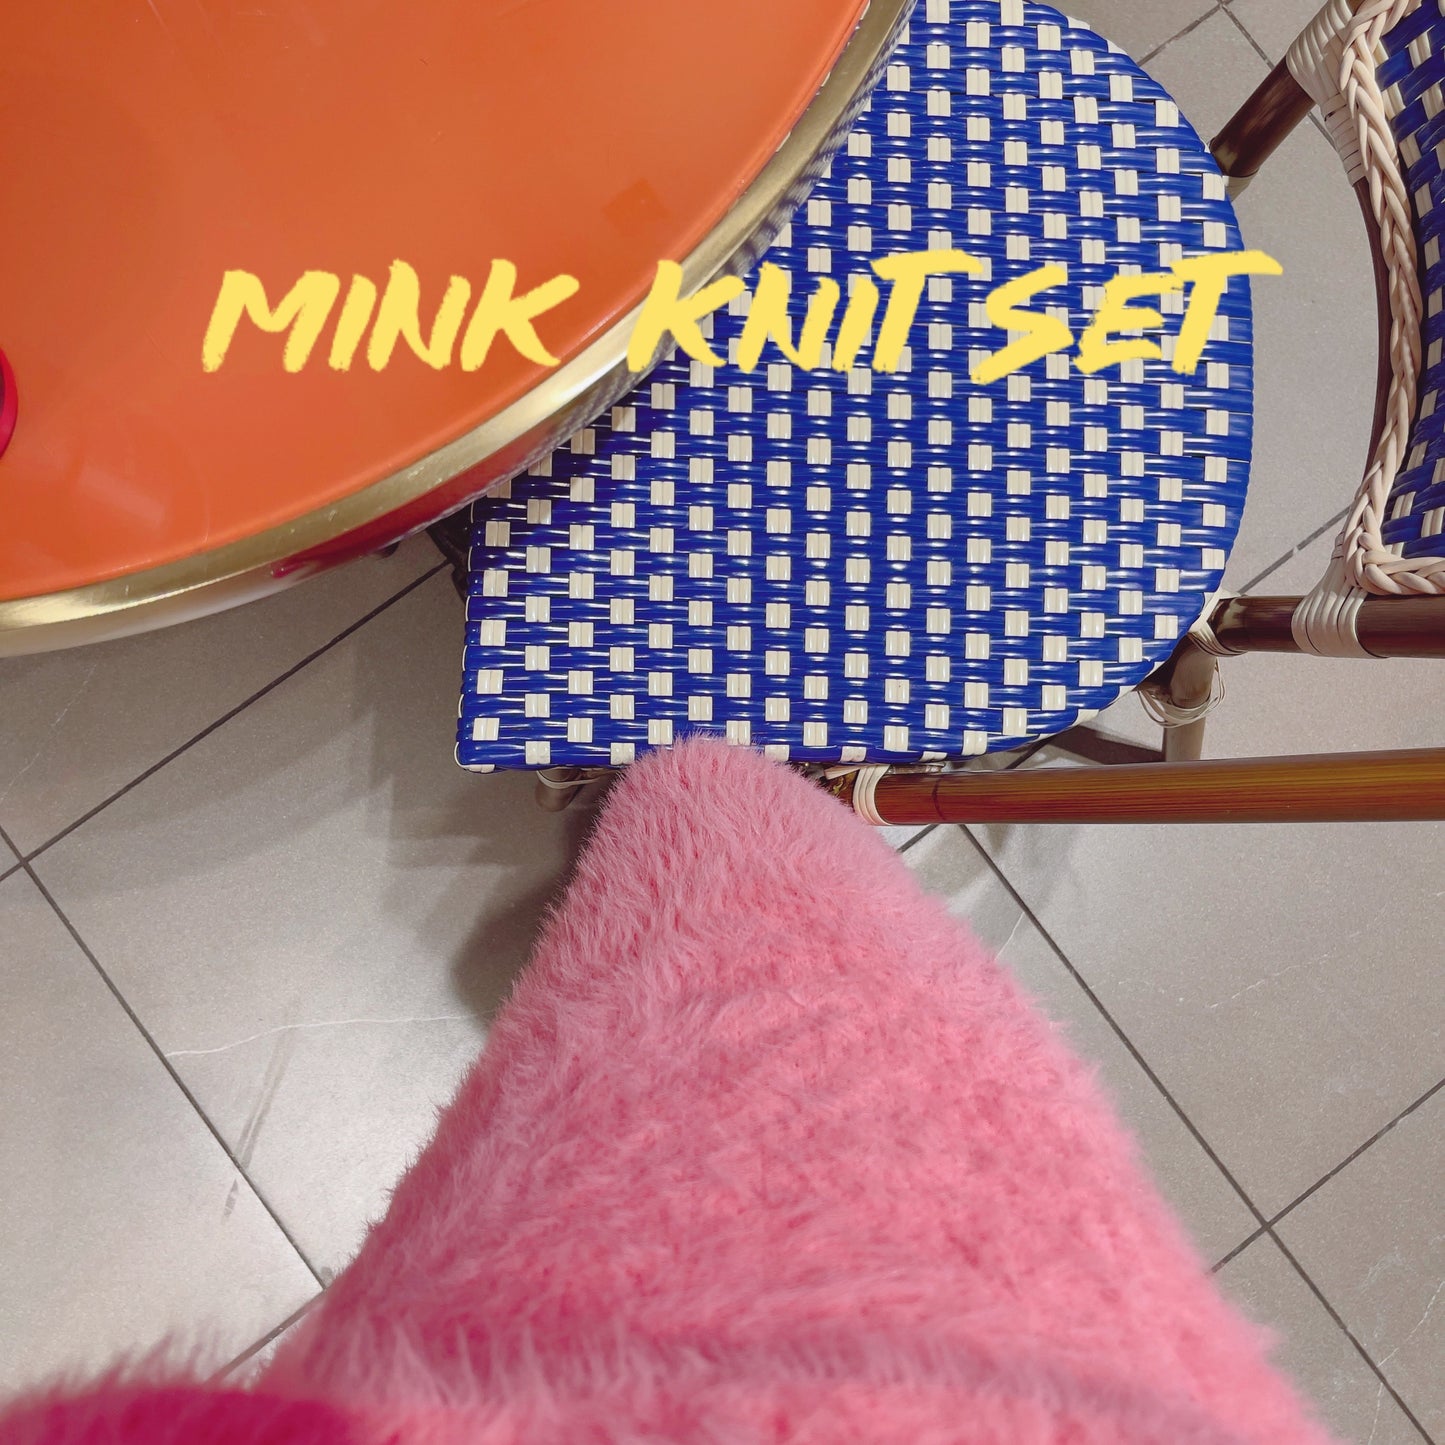 [50%] Mink Knit Set